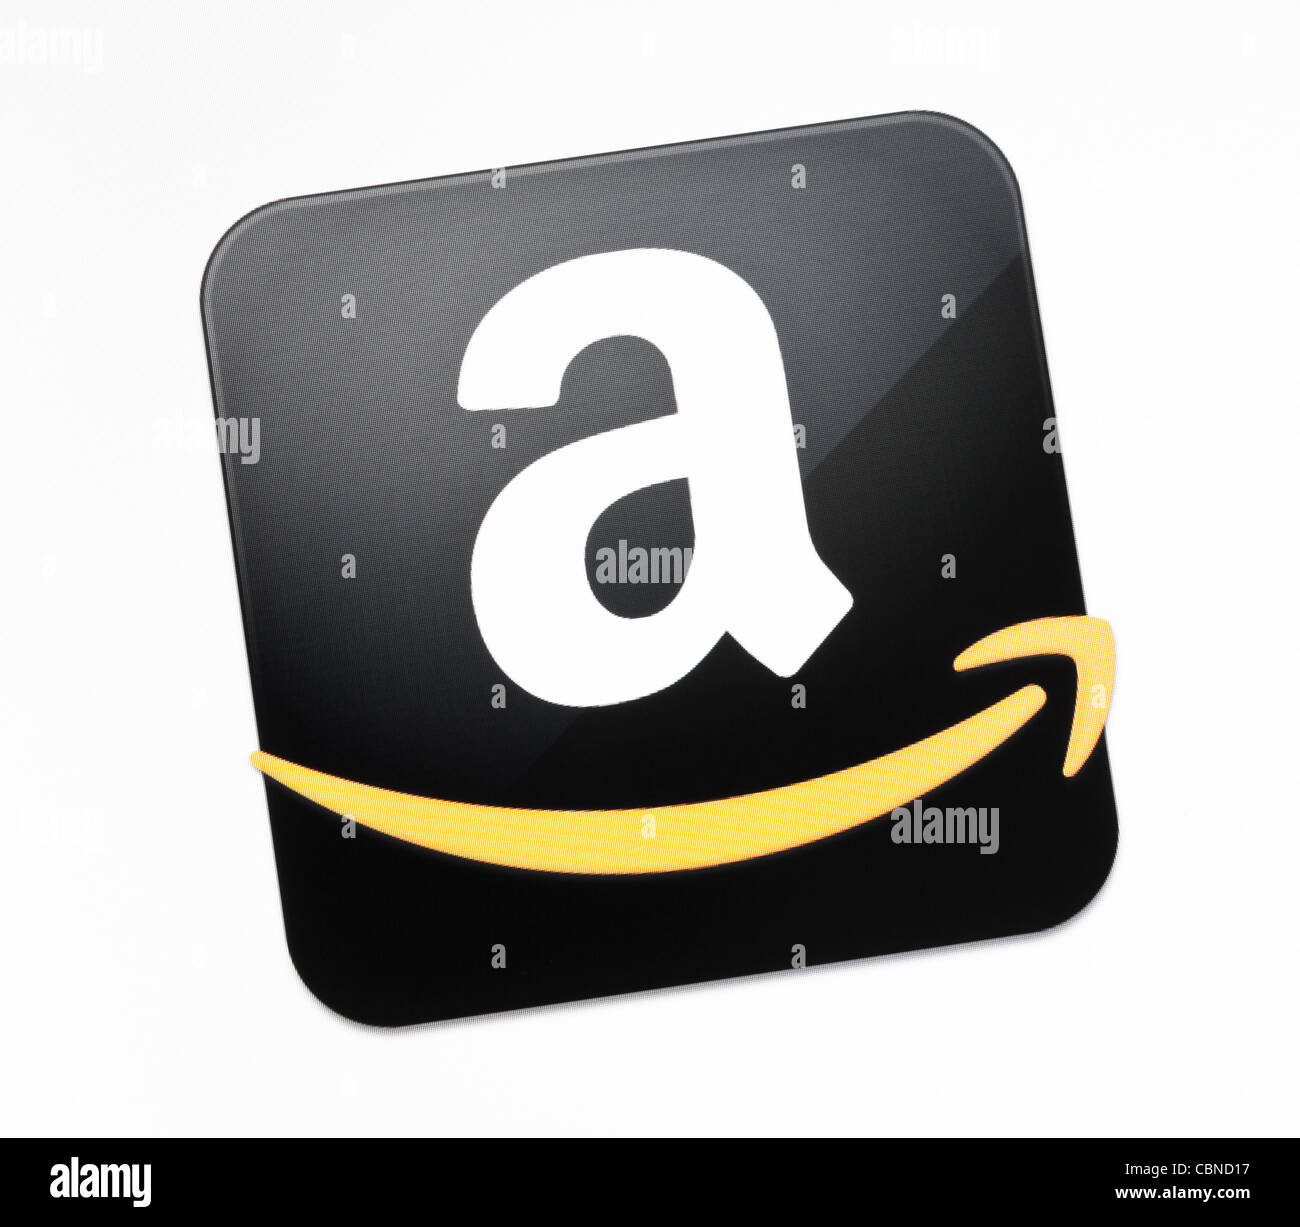 L'Amazon.com signe sur un écran de surveillance. Banque D'Images